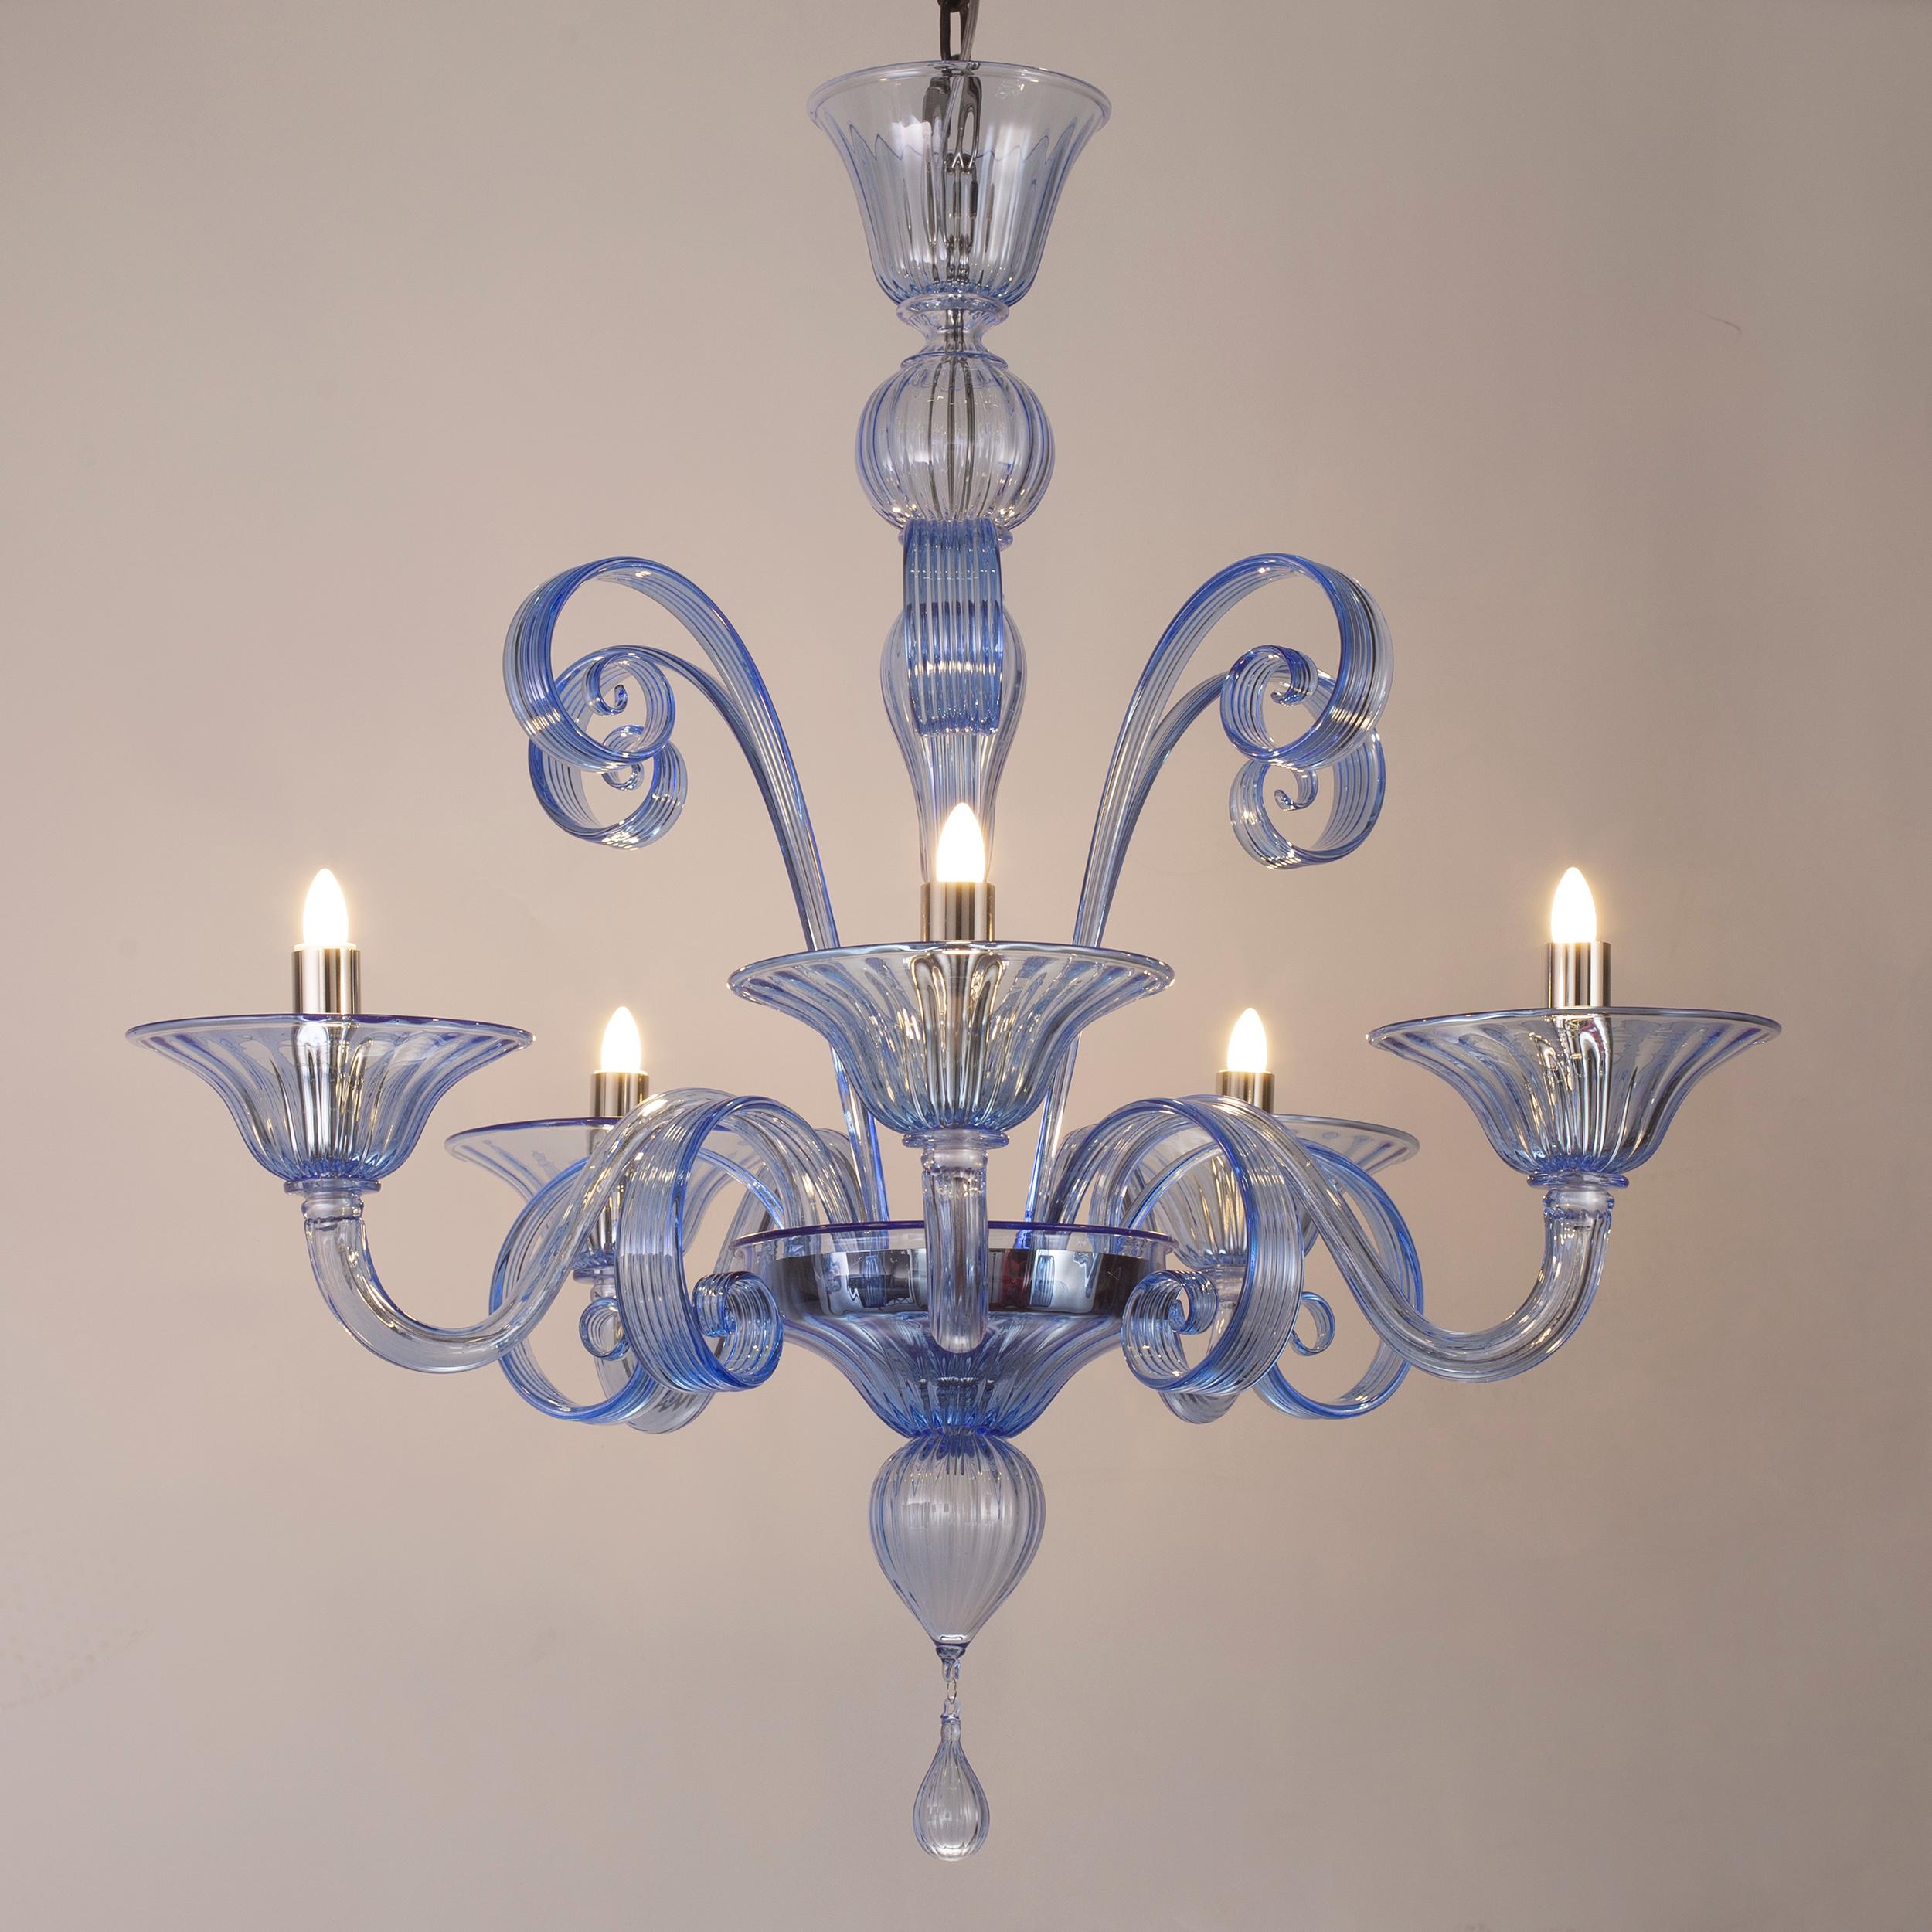 Capriccio von Multiforme ist ein 5-flammiger Kronleuchter aus blauem Kunstglas mit geschwungenen Ornamenten.
Es ist von der klassischen venezianischen Tradition inspiriert und zeichnet sich durch eine zentrale Säule aus, in der viele 